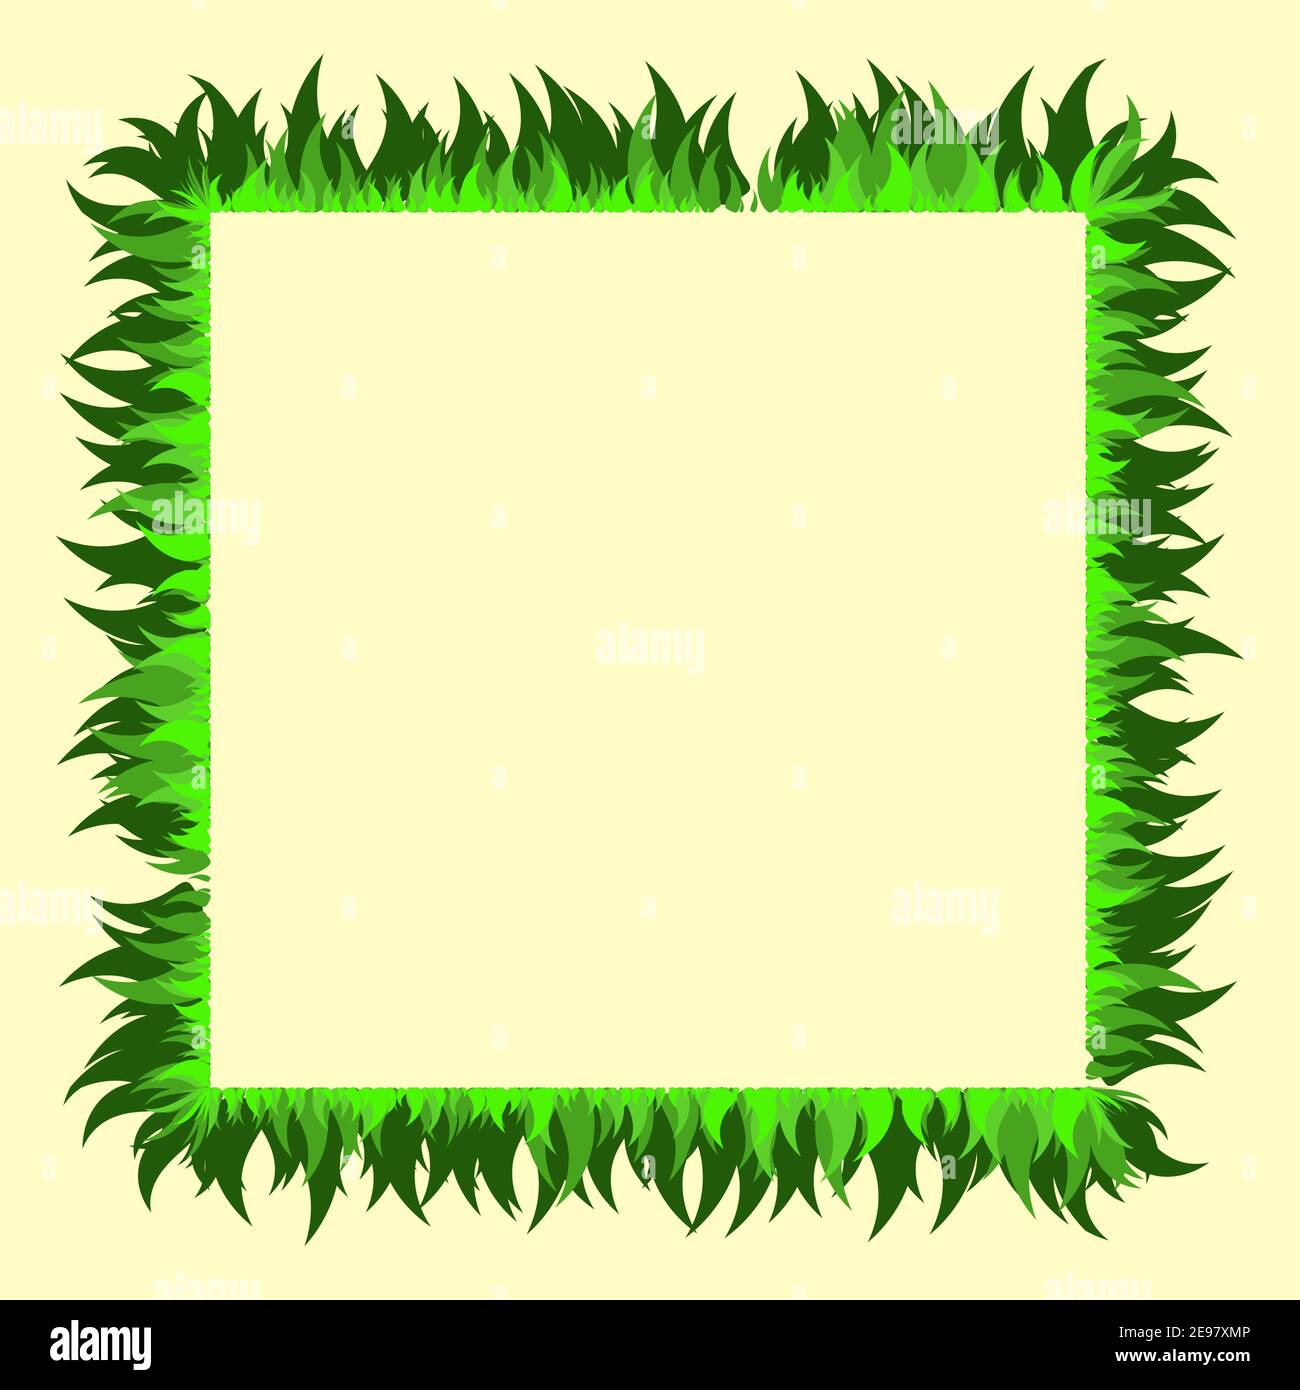 Quadratischer Grasrahmen. Leerer Rand im Öko-Stil mit grünem Laub Rasen. Vektorgrafik Frühling oder Sommerzeit. Abstrakte Ökologie Vorlage für PR Stock Vektor